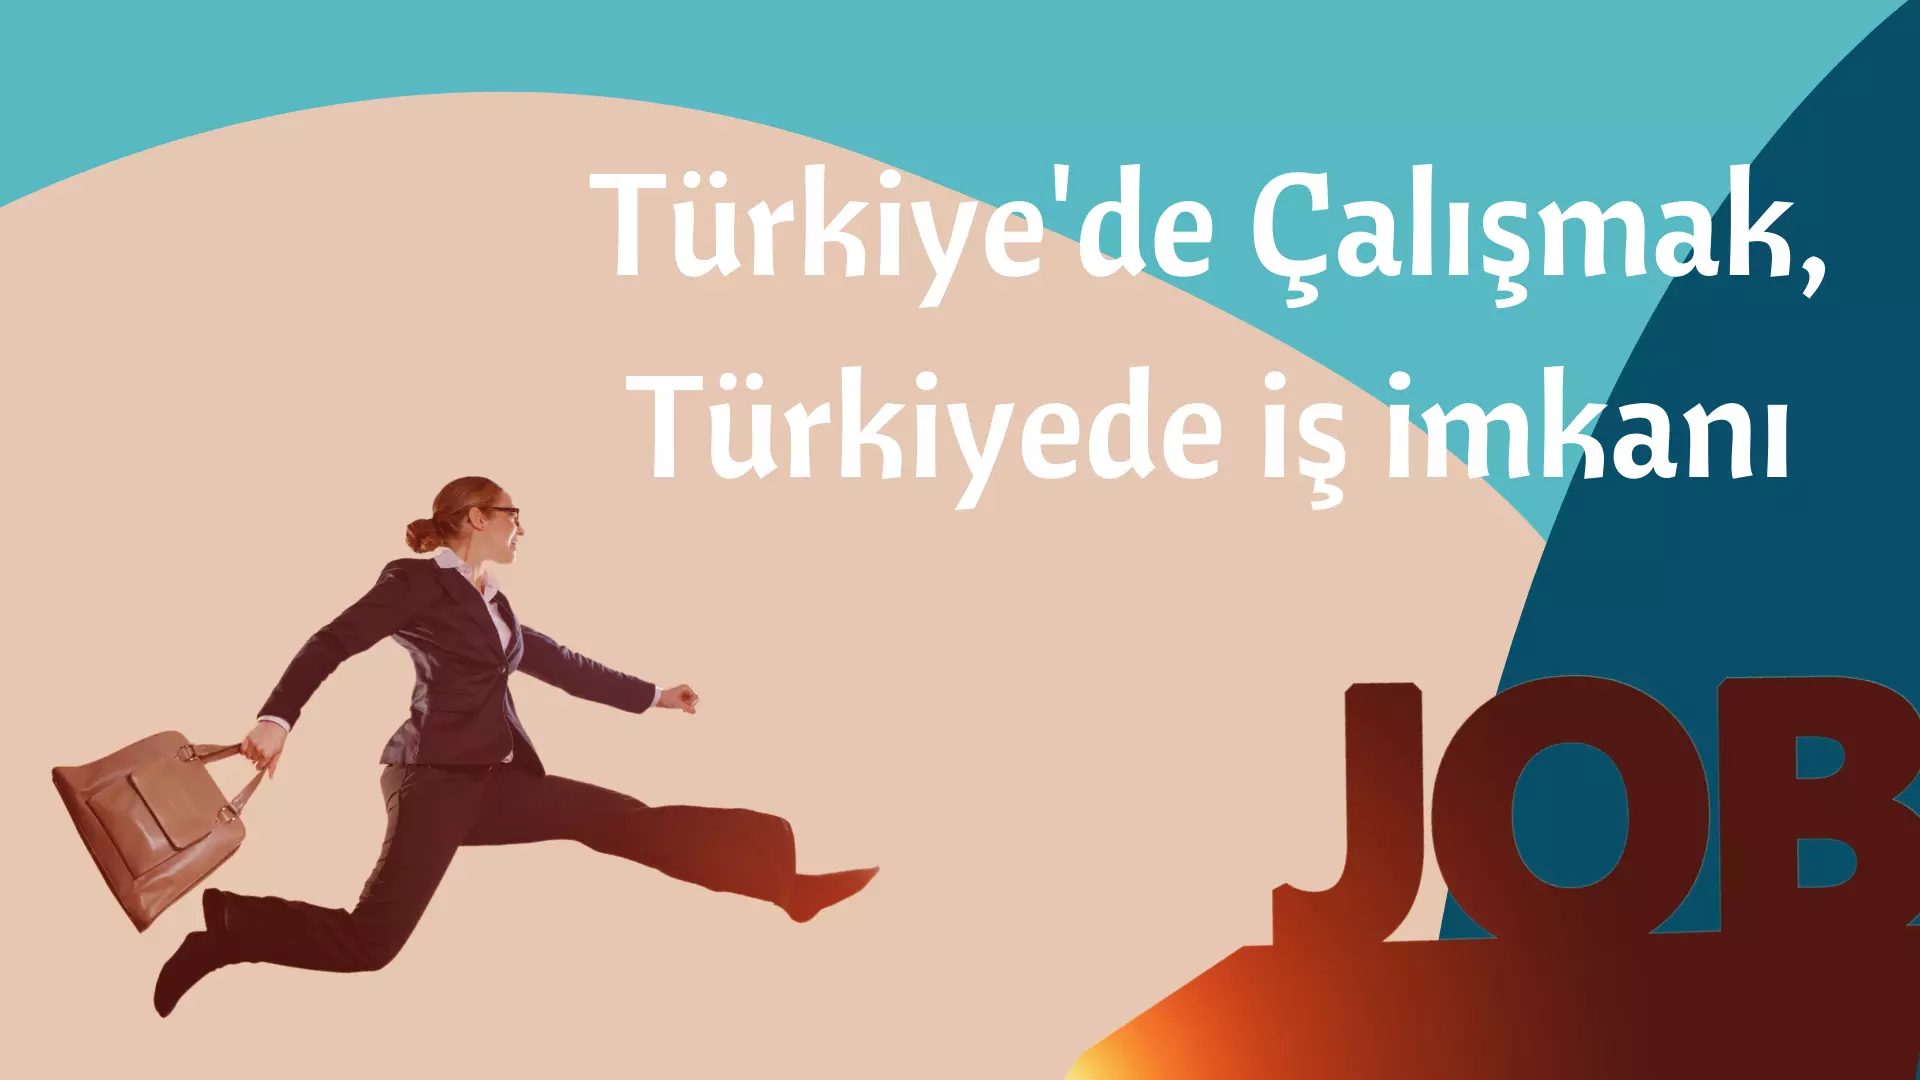 Türkiye'de Çalışmak,Türkiyede iş imkanı